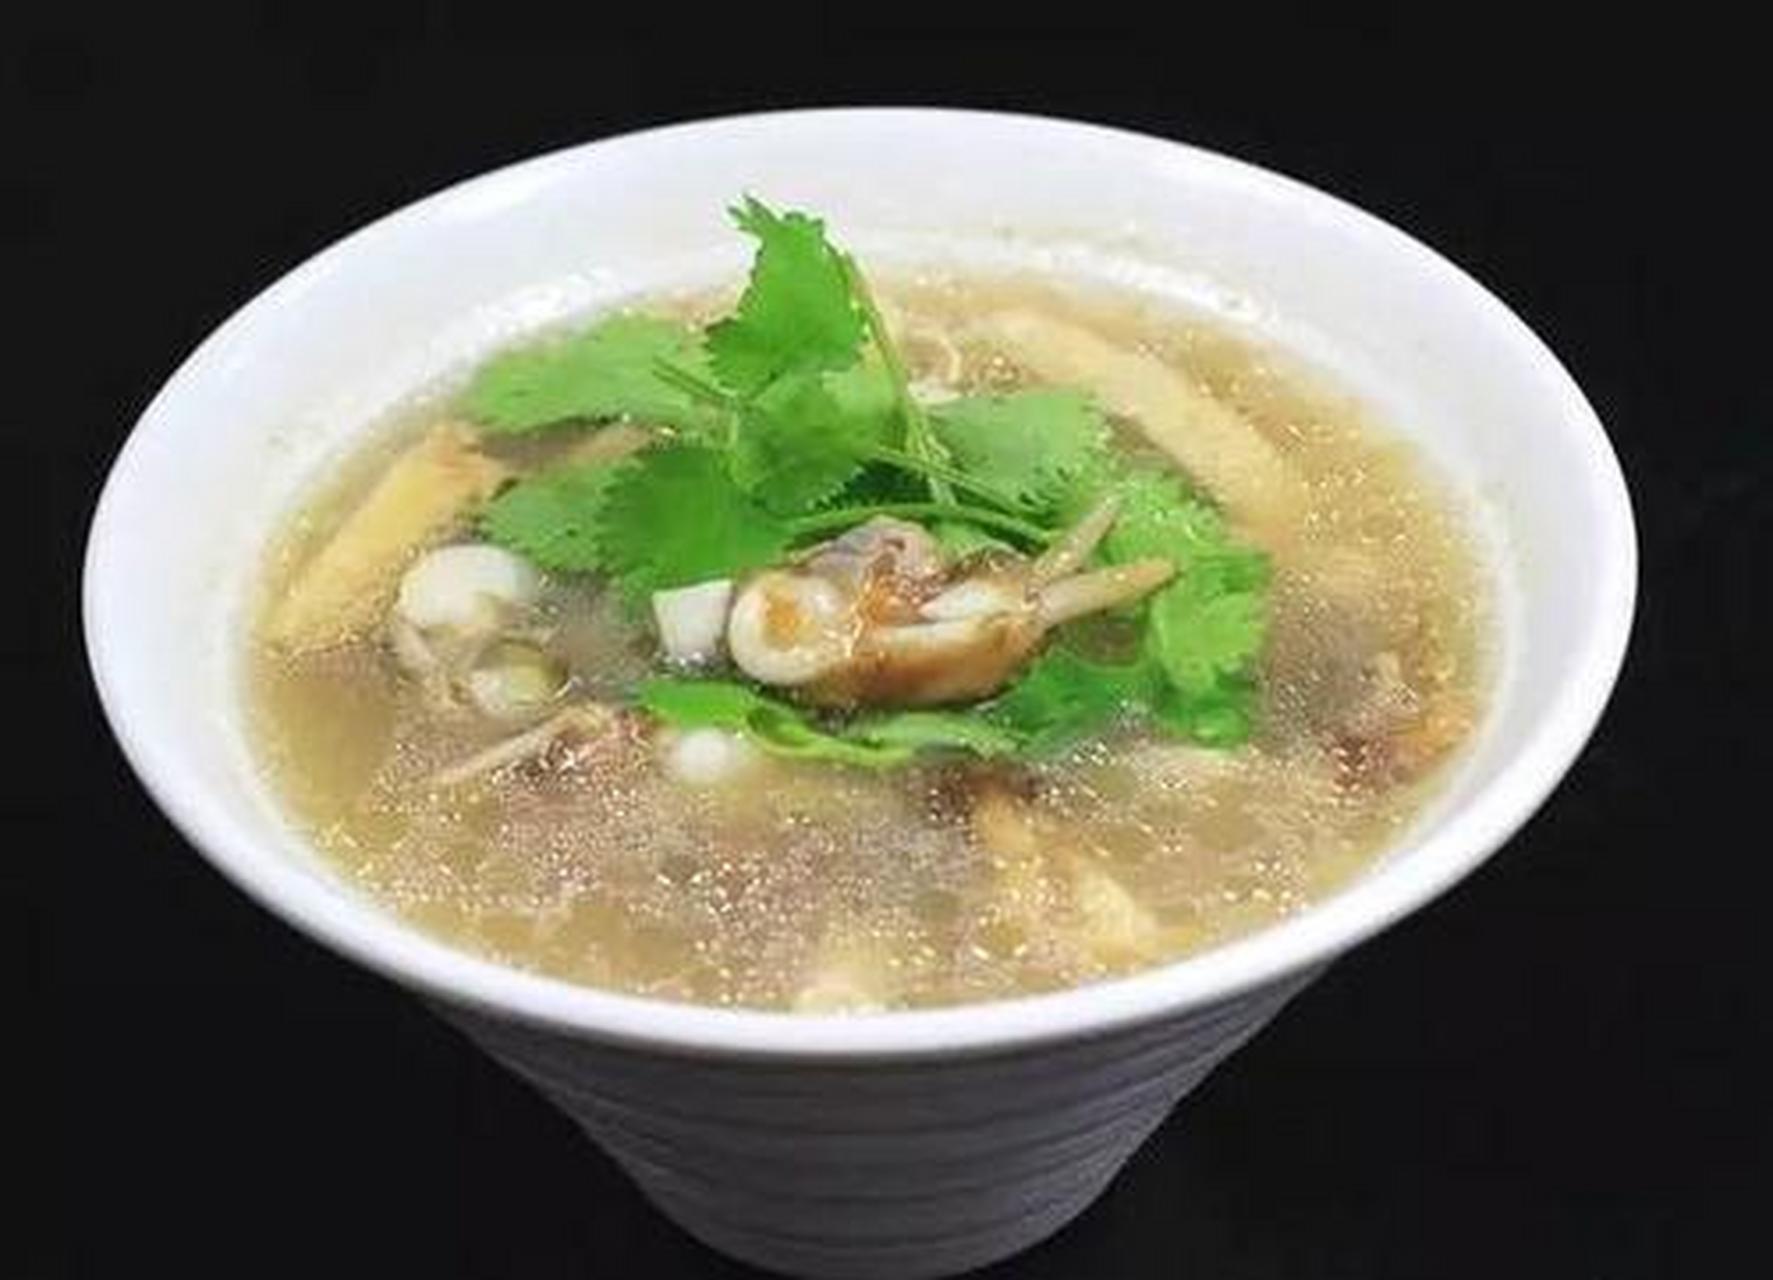 蛏熘,又叫蛏溜,是莆田的一道特色汤菜,以蛏肉混和淀粉,加上各种调味